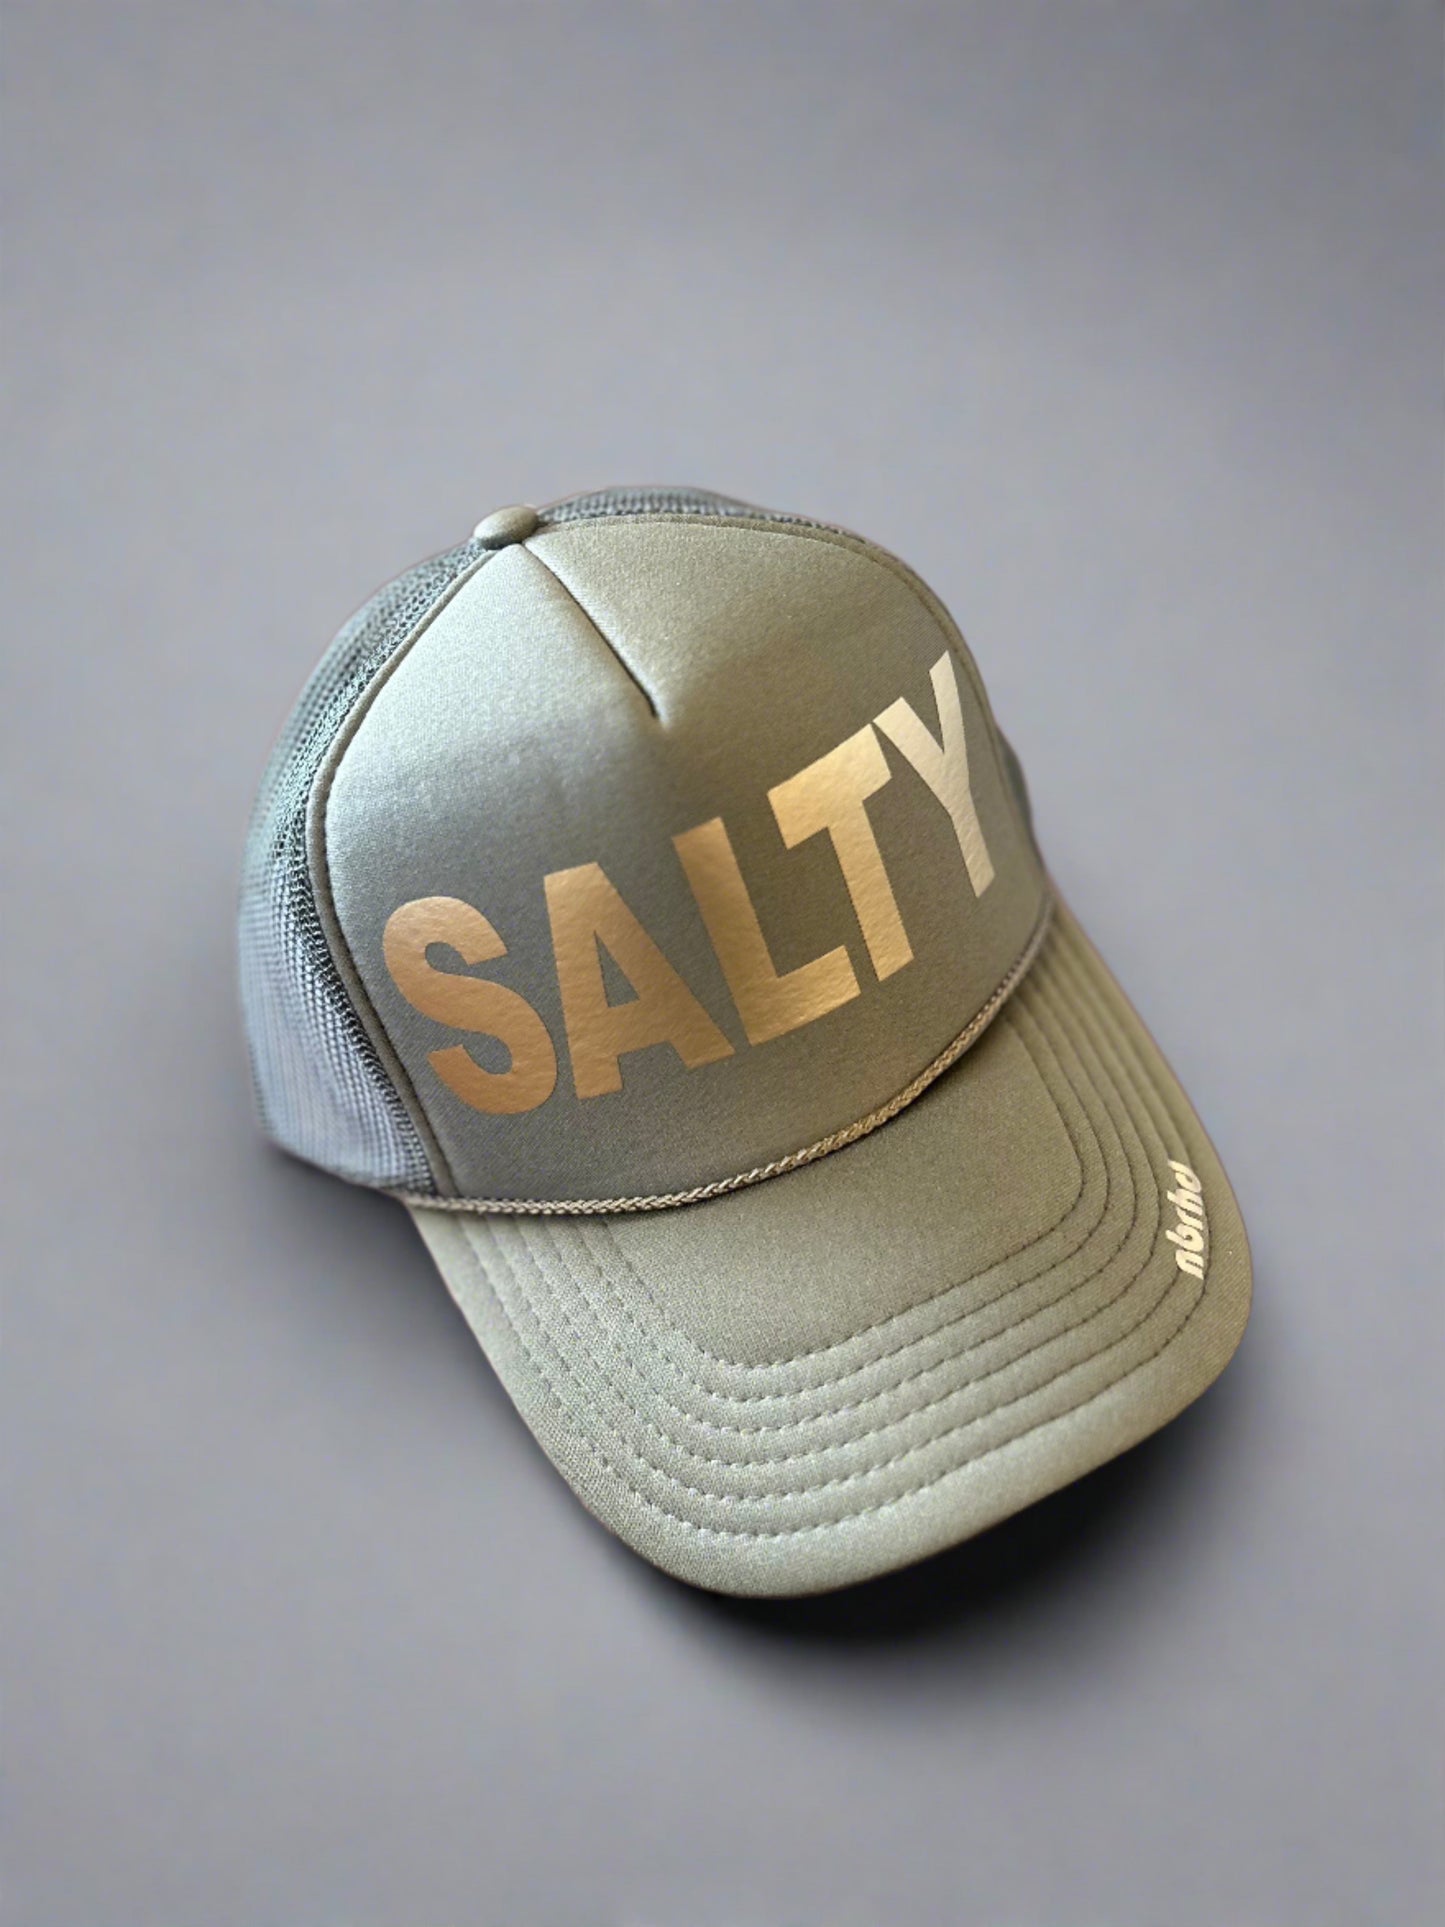 Salty Trucker Hat